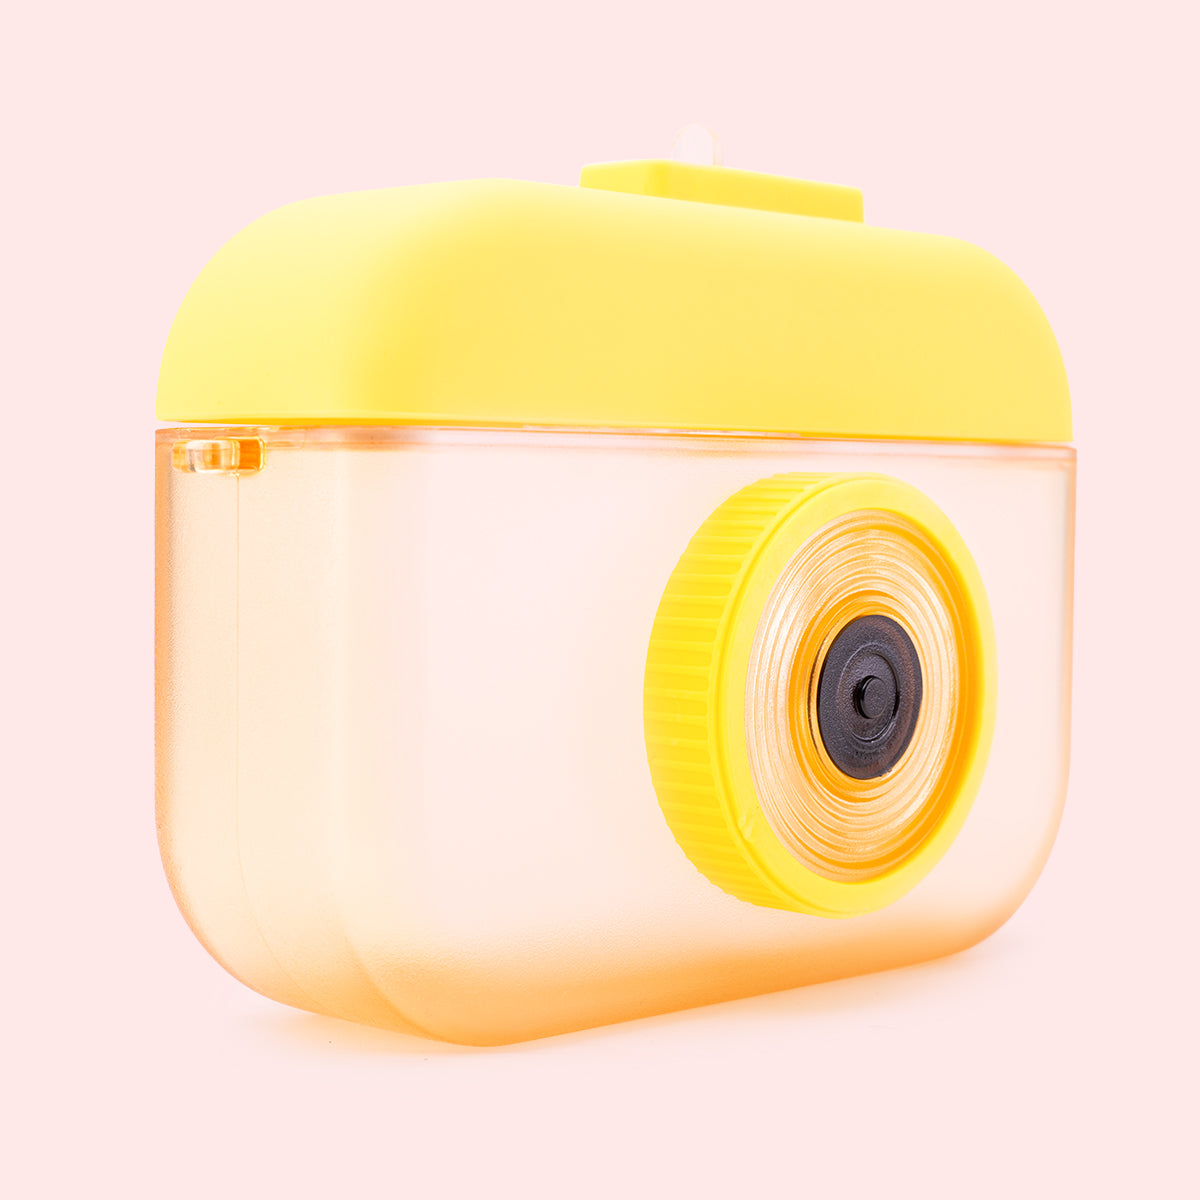 Cute Camera Shape Sipper Bottle - Yellow